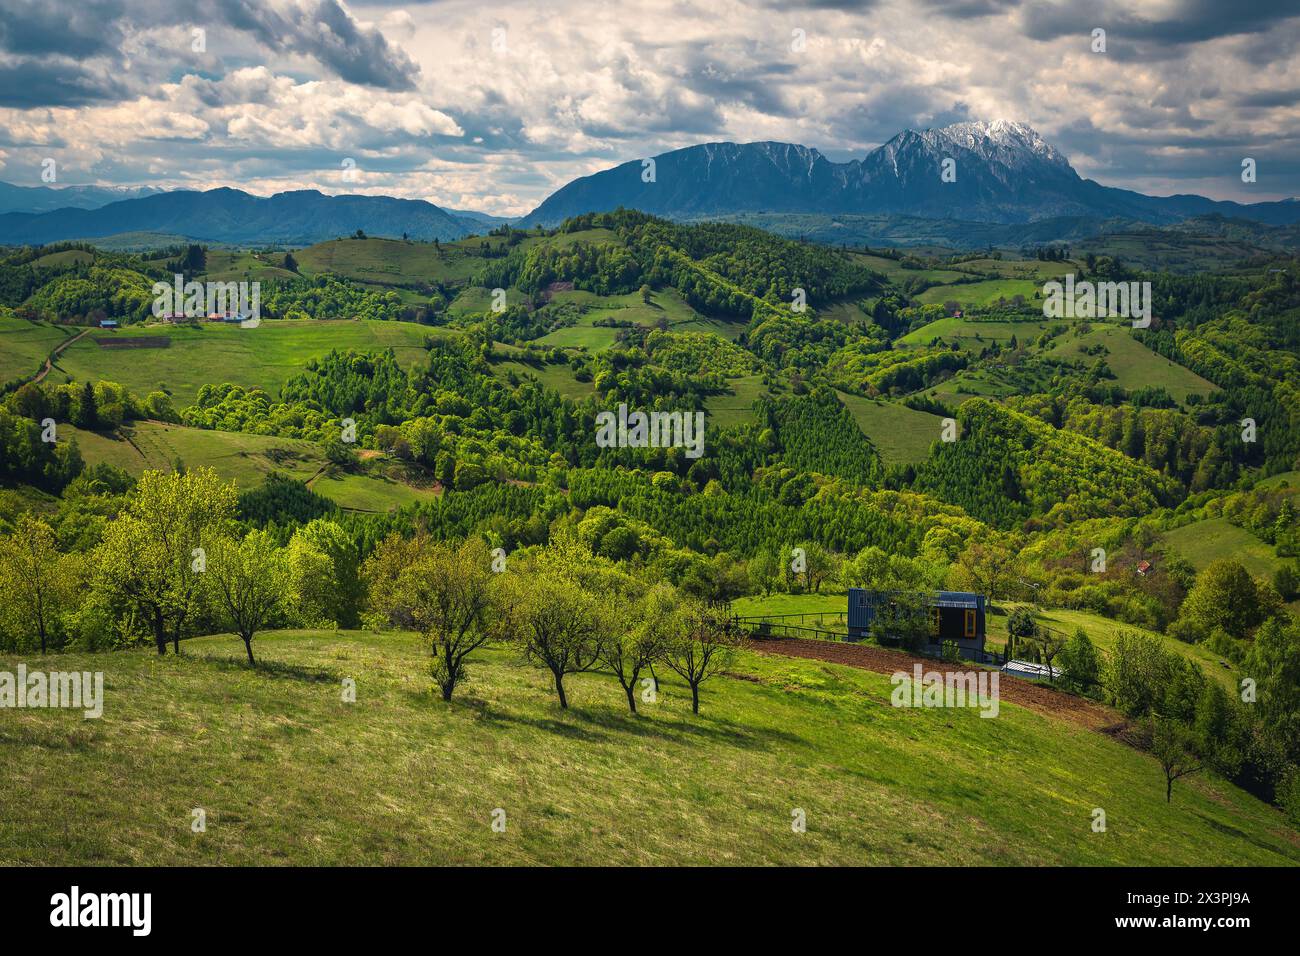 Fantastico paesaggio rurale estivo e graziosa piccola casa sul pendio con splendida vista, montagne di Piatra Craiului sullo sfondo, Holbav, Romania, Europa Foto Stock